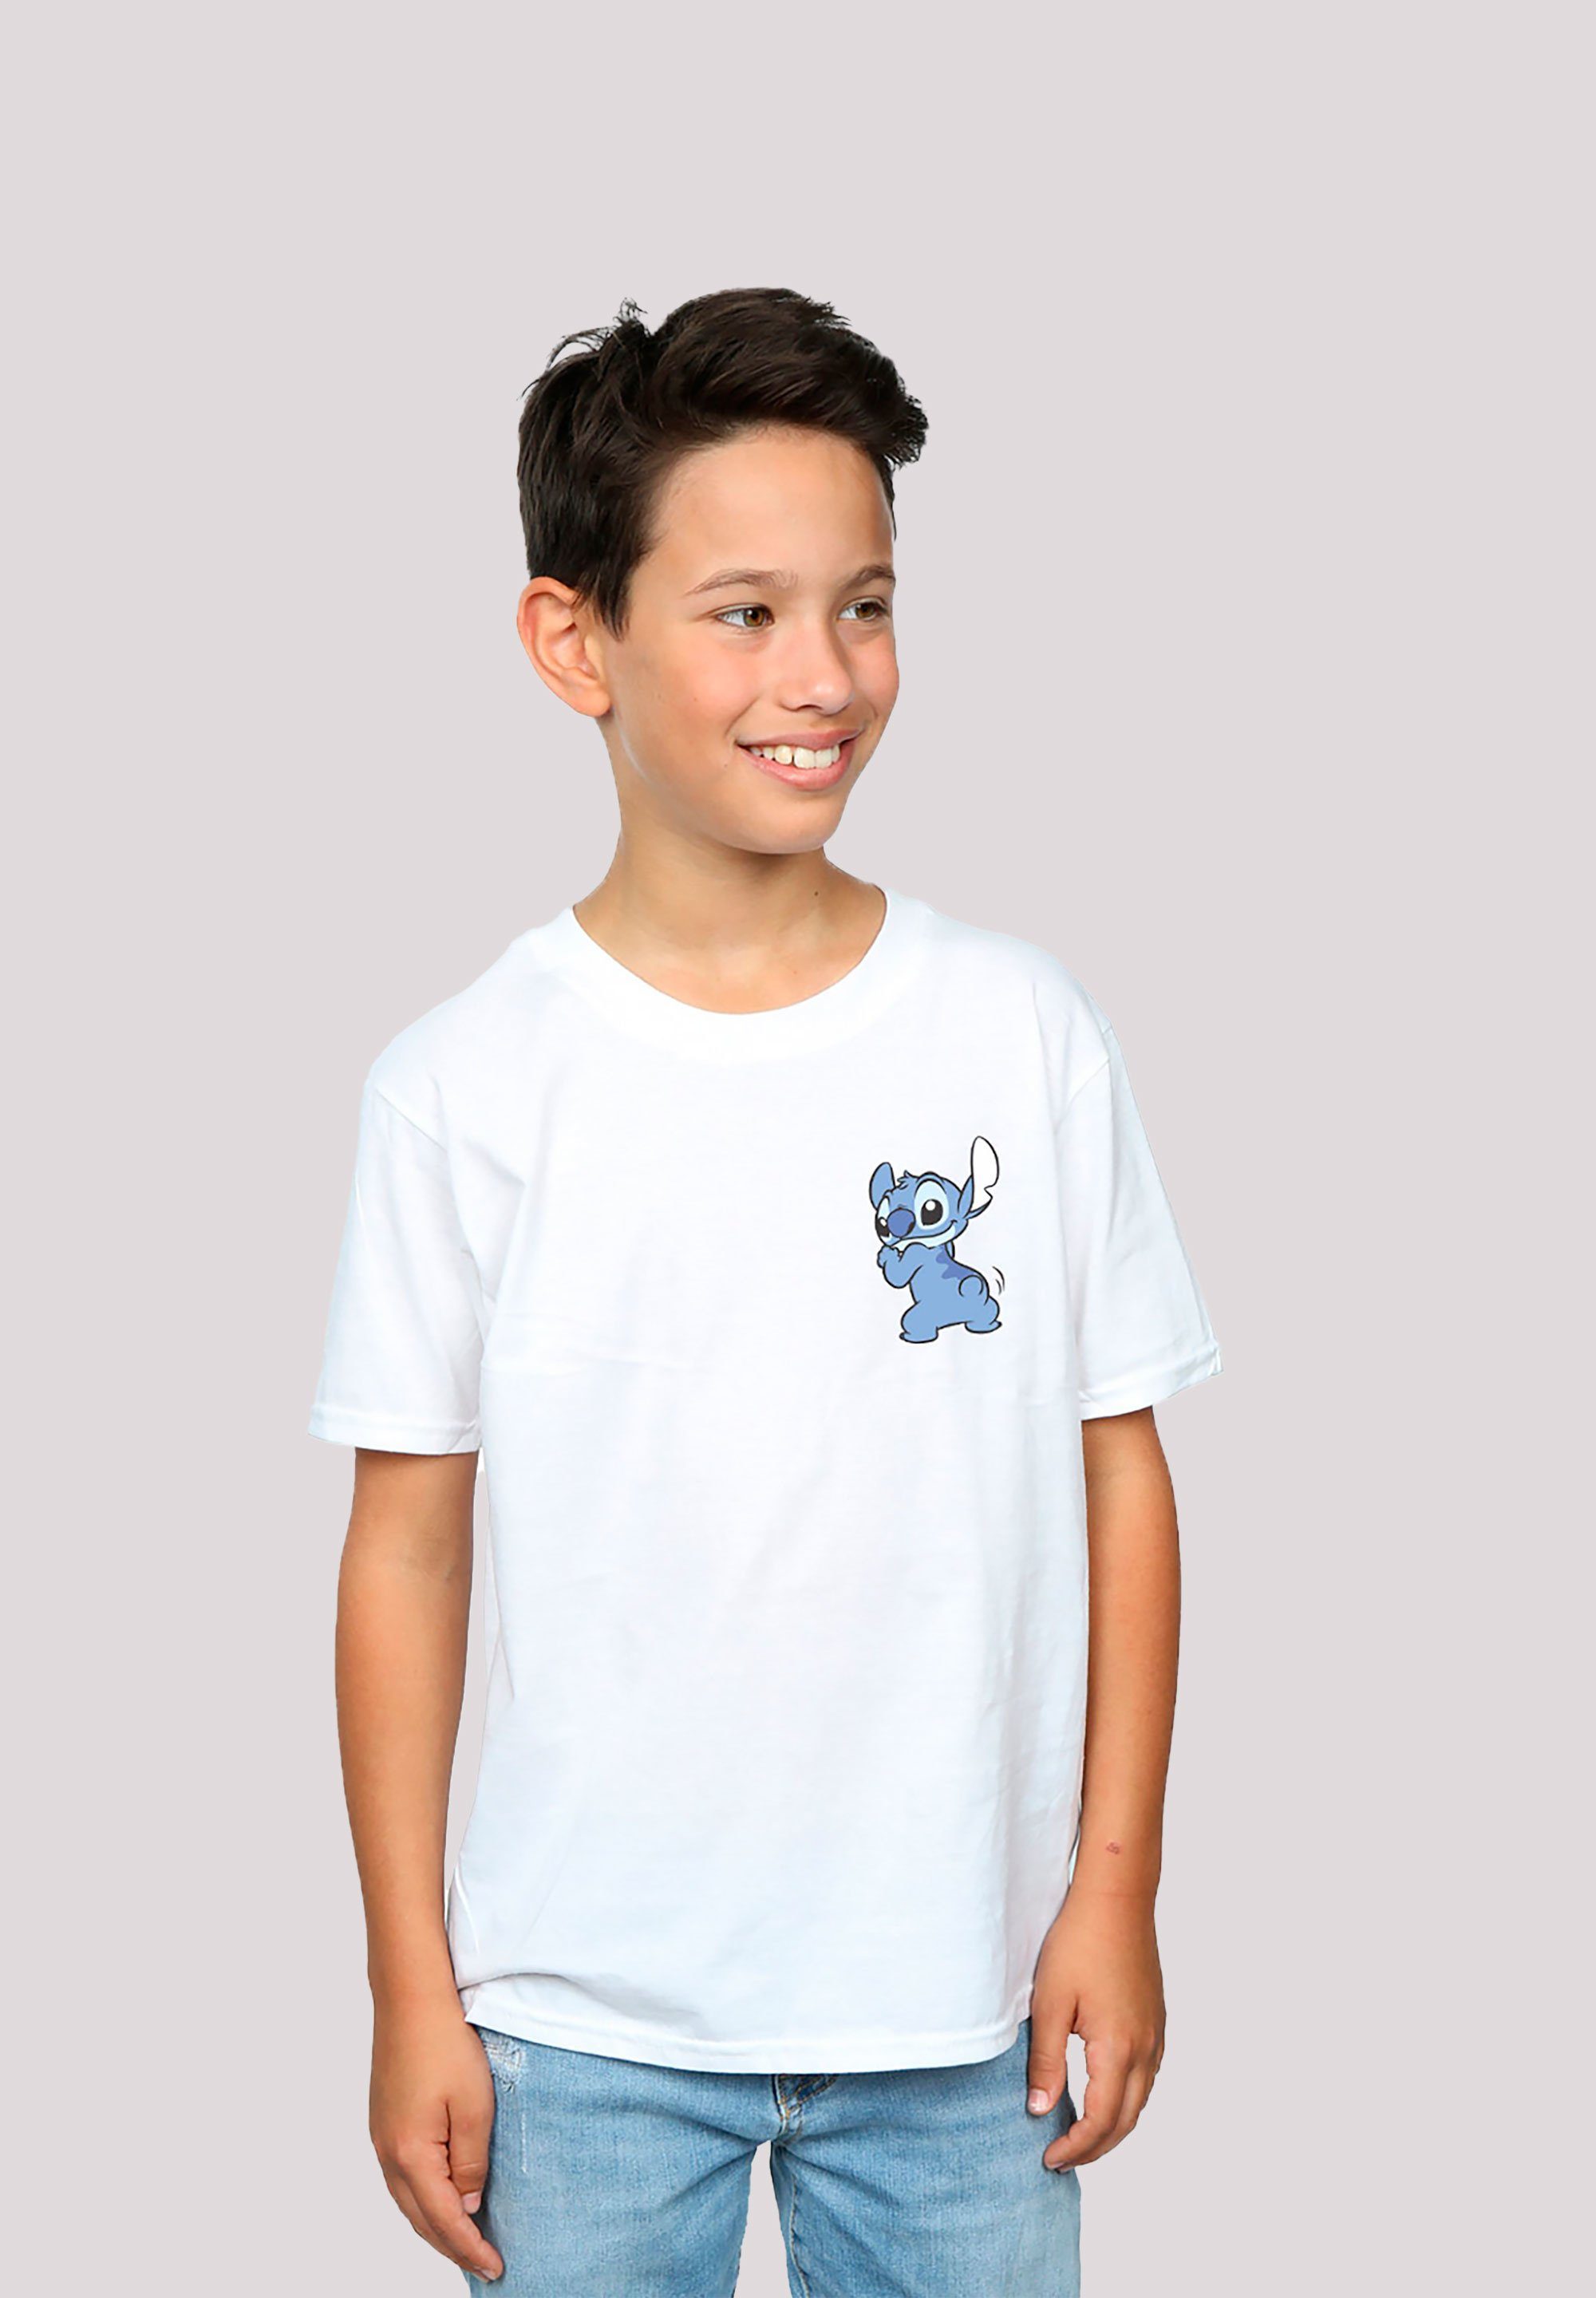 F4NT4STIC T-Shirt Disney Lilo And Stitch Unisex Kinder,Premium Merch,Jungen,Mädchen,Bedruckt weiß